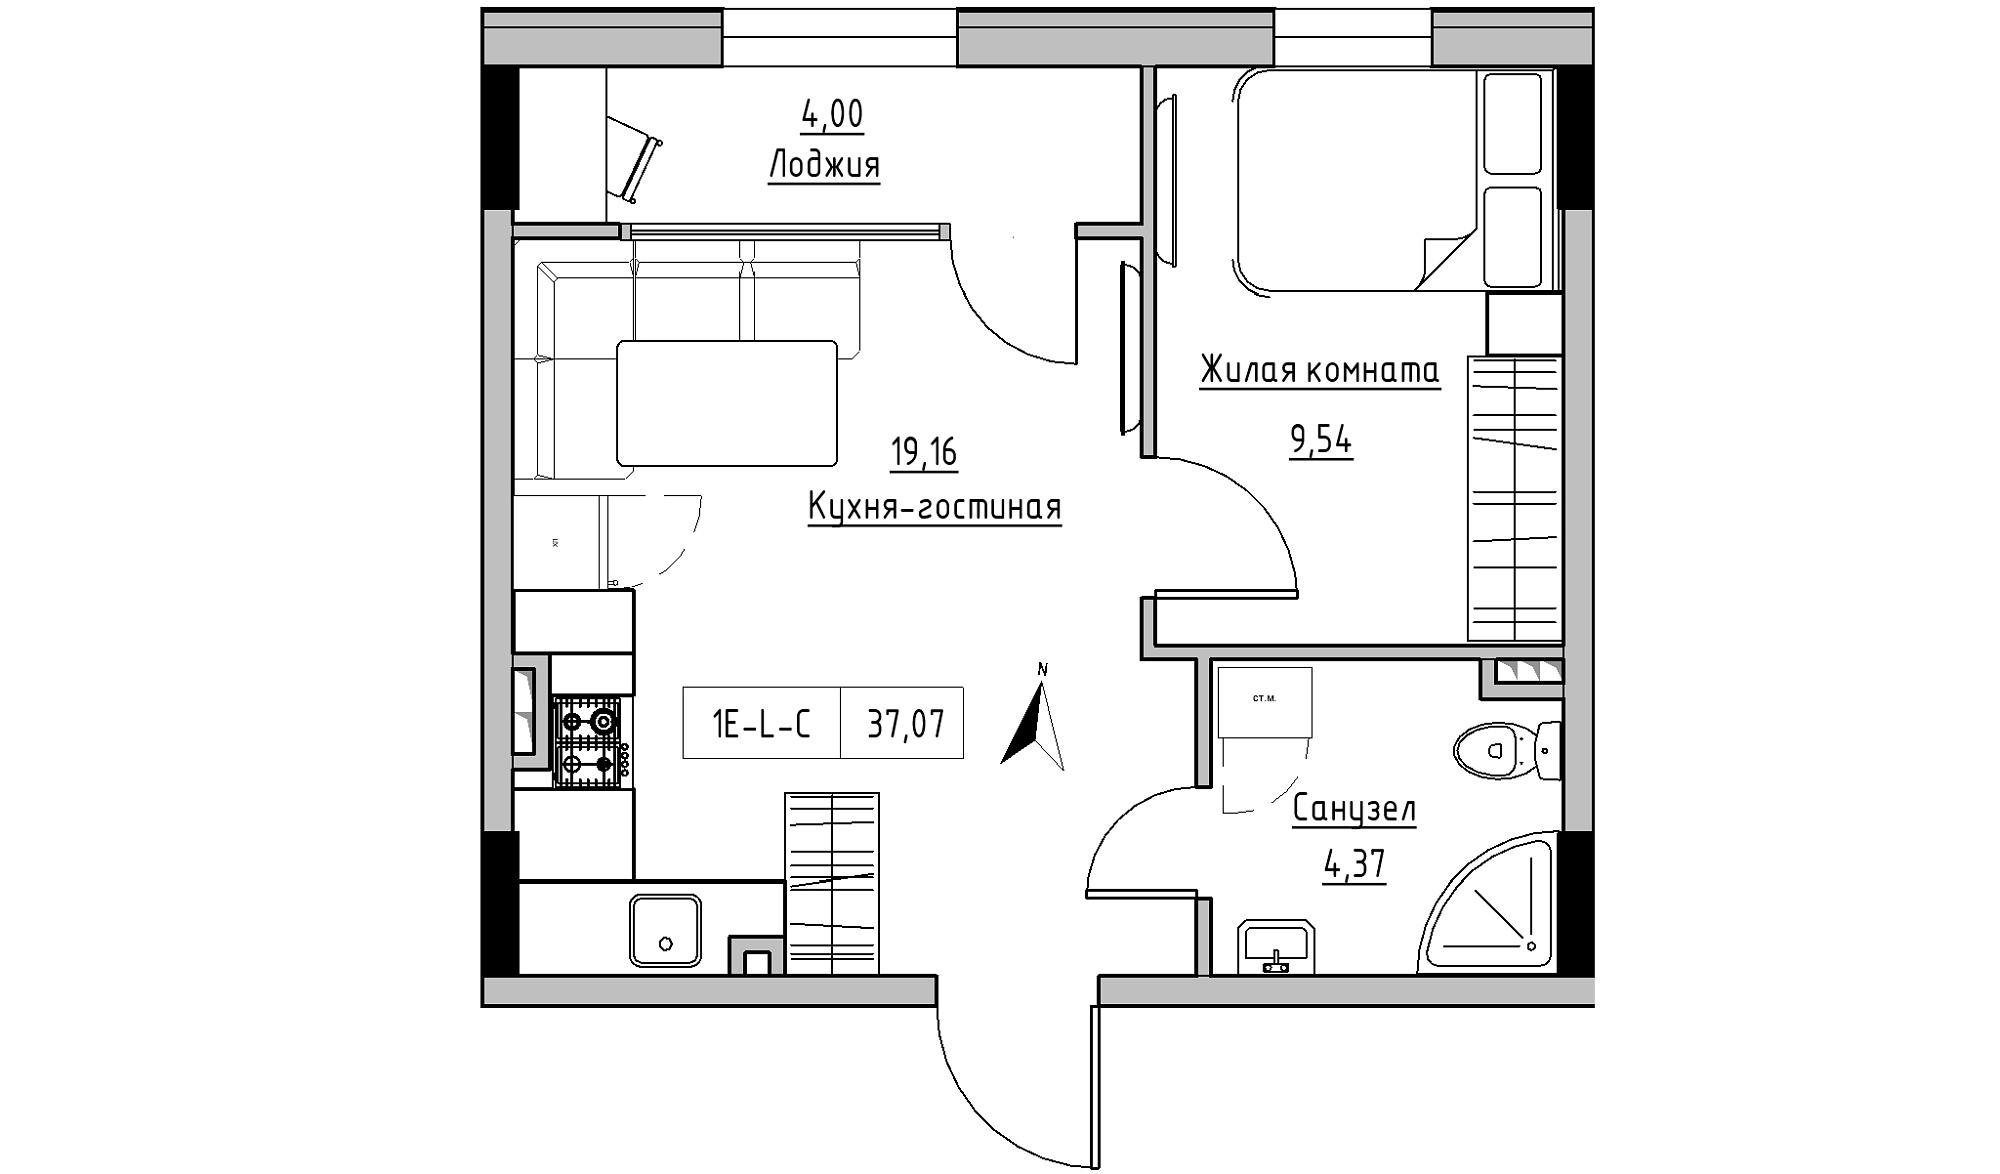 Планировка 1-к квартира площей 37.07м2, KS-025-02/0008.